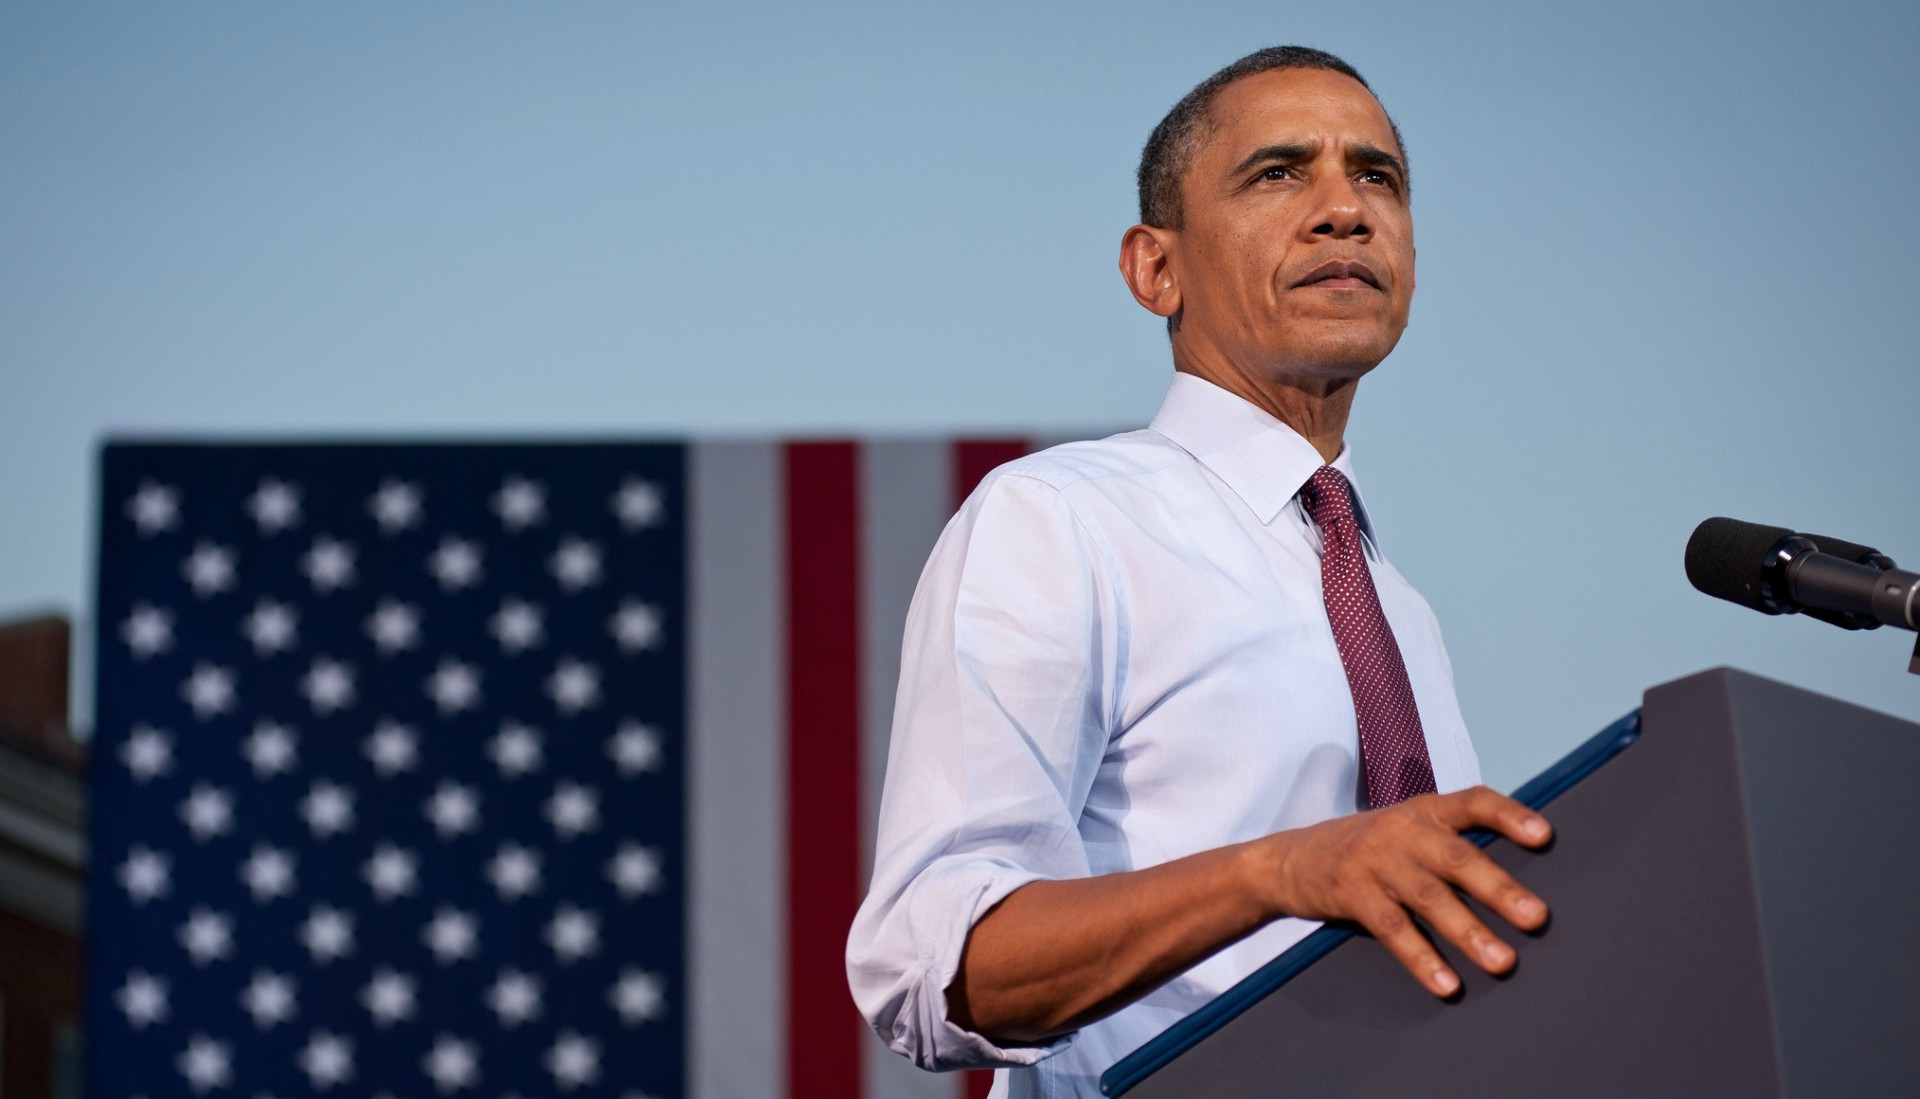 Le président des Etats-Unis Barack Obama (Photo:Christopher Dilts/Flickr/CC BY-NC-SA 2.0)